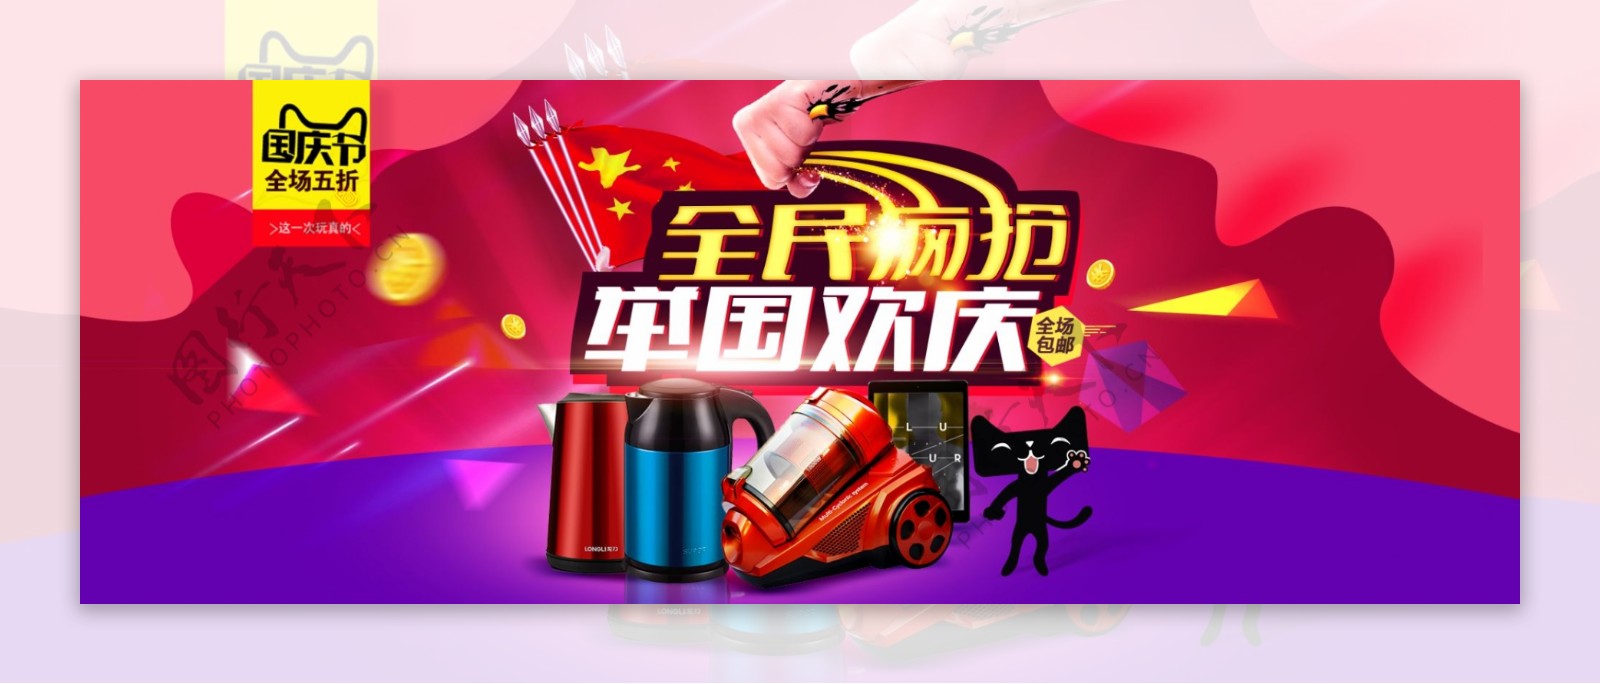 淘宝天猫国庆节促销海报设计模板